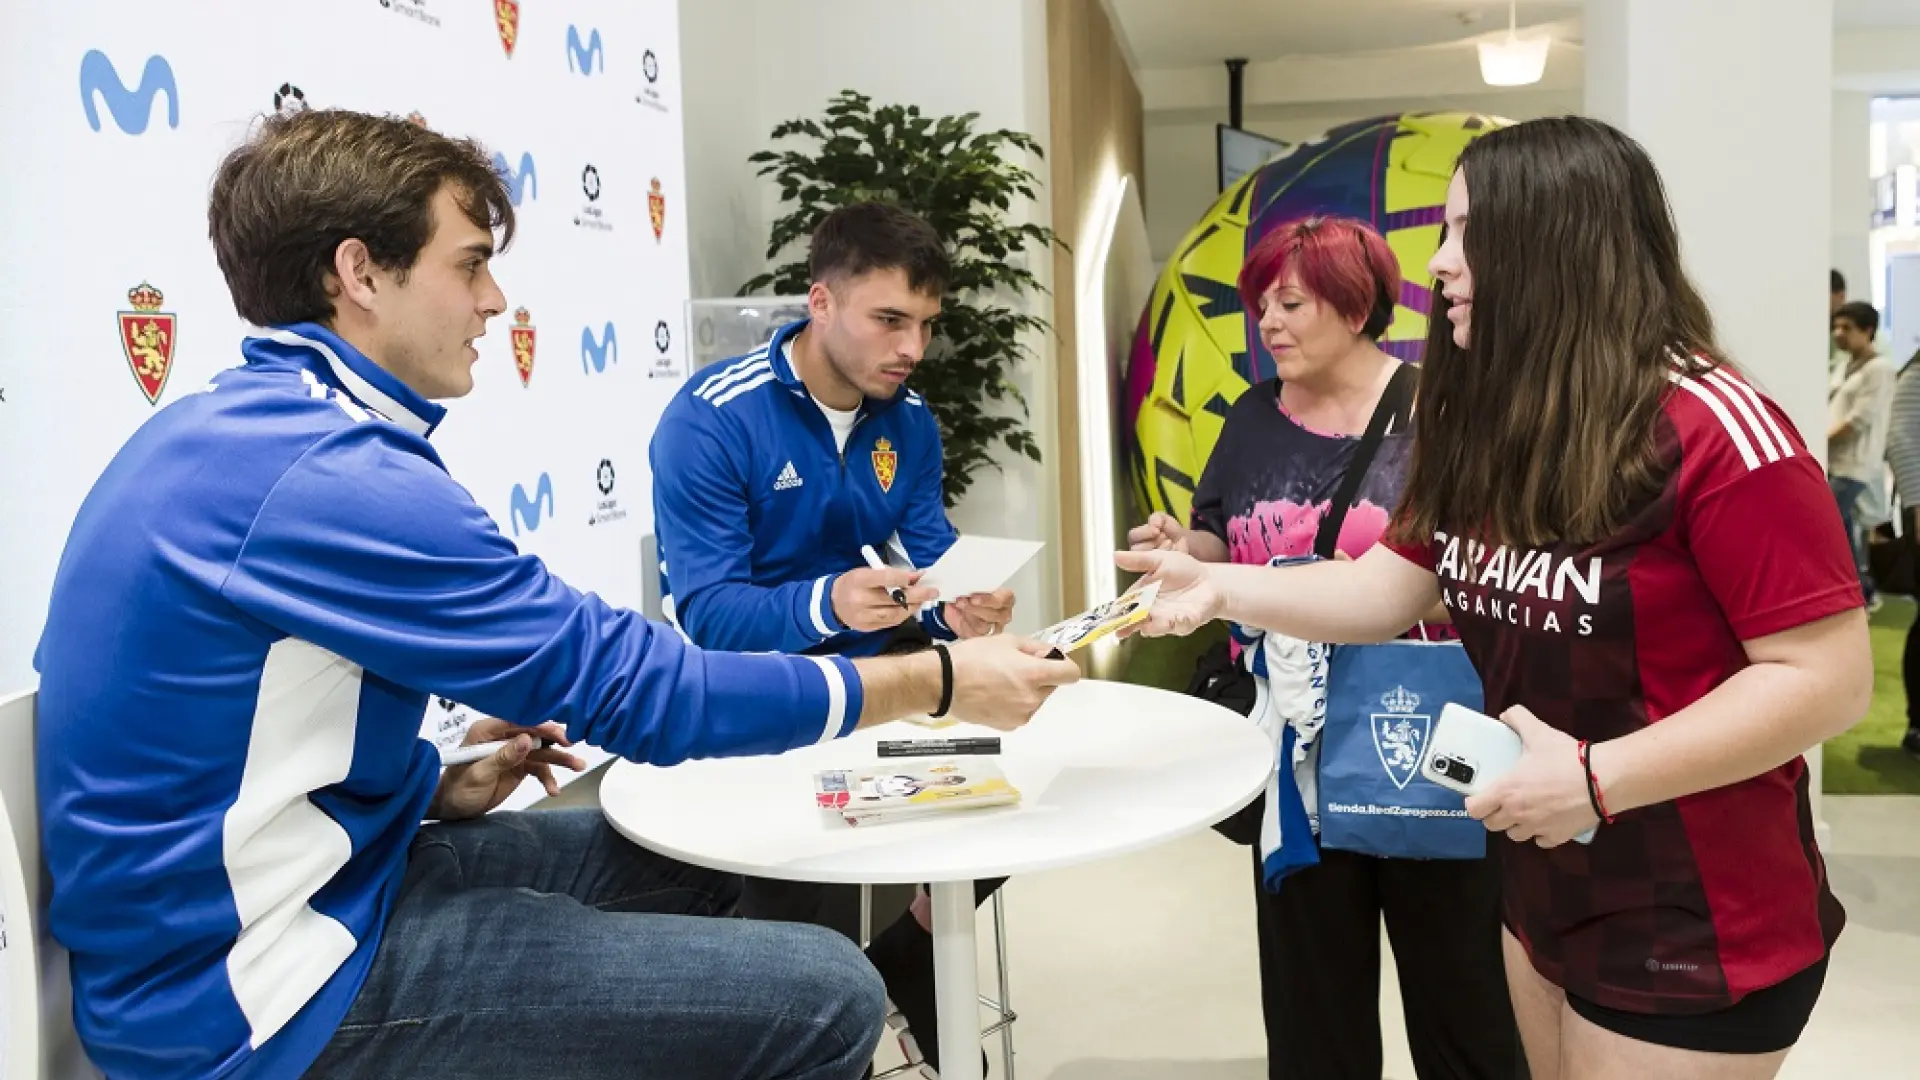 Los aficionados recibieron autógrafos y pudieron fotografiarse con los jugadores.